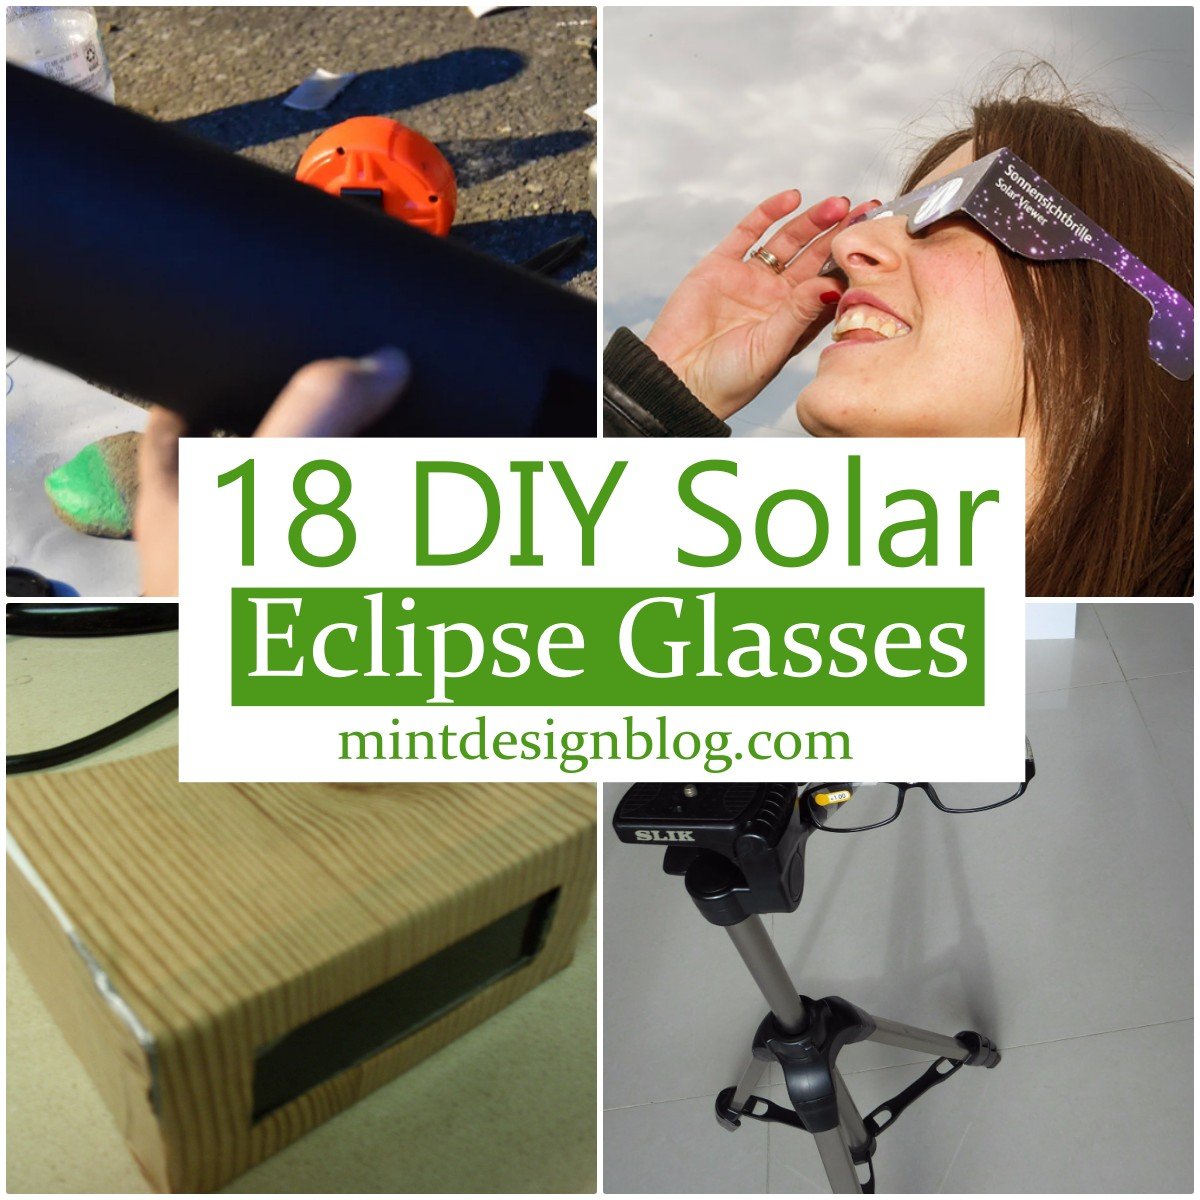 18 DIY Solar Eclipse Glasses For Safe Sight Mint Design Blog